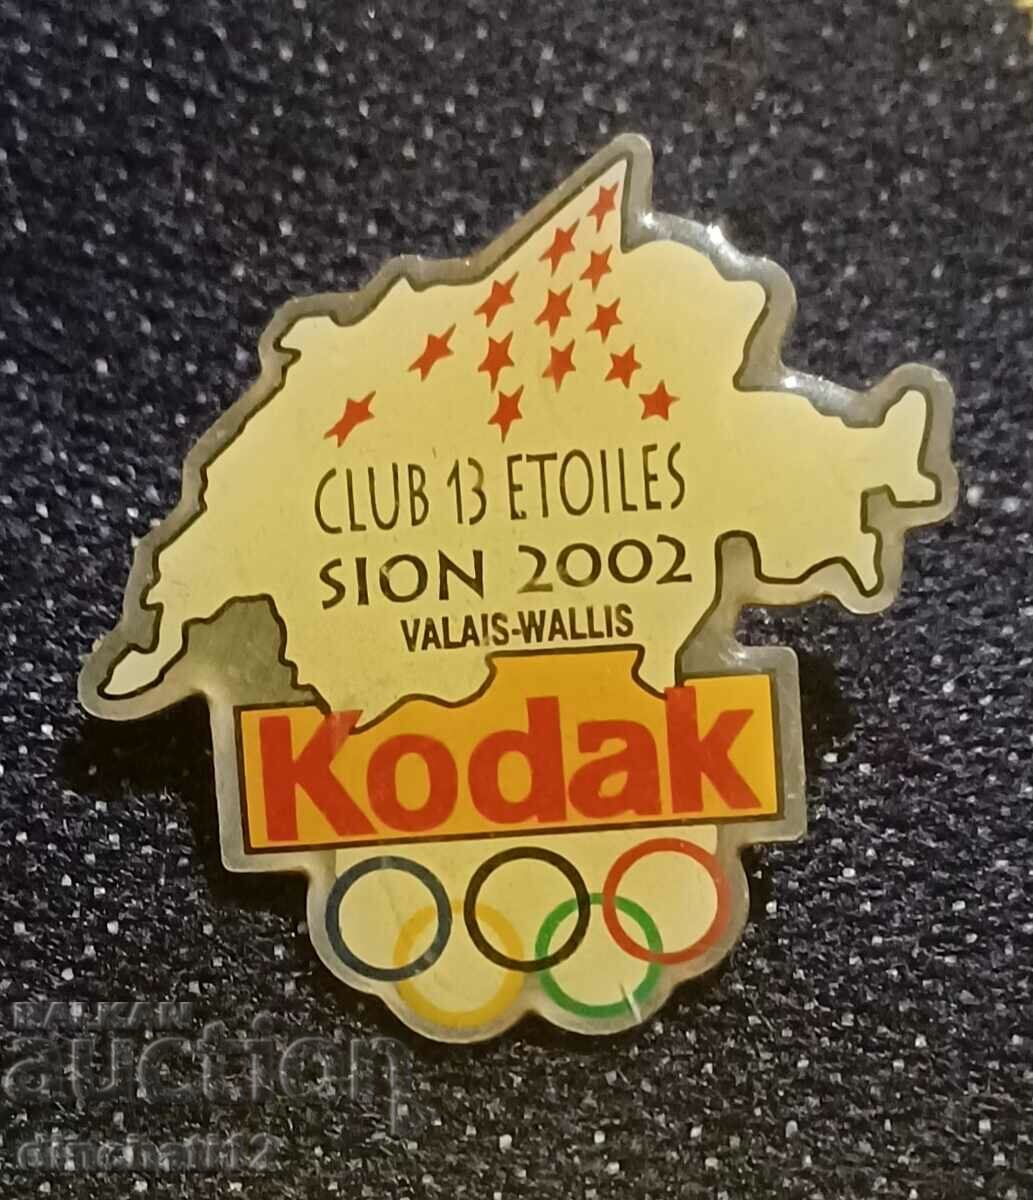 KODAK OLYMPIC PIN. Kodak cameras